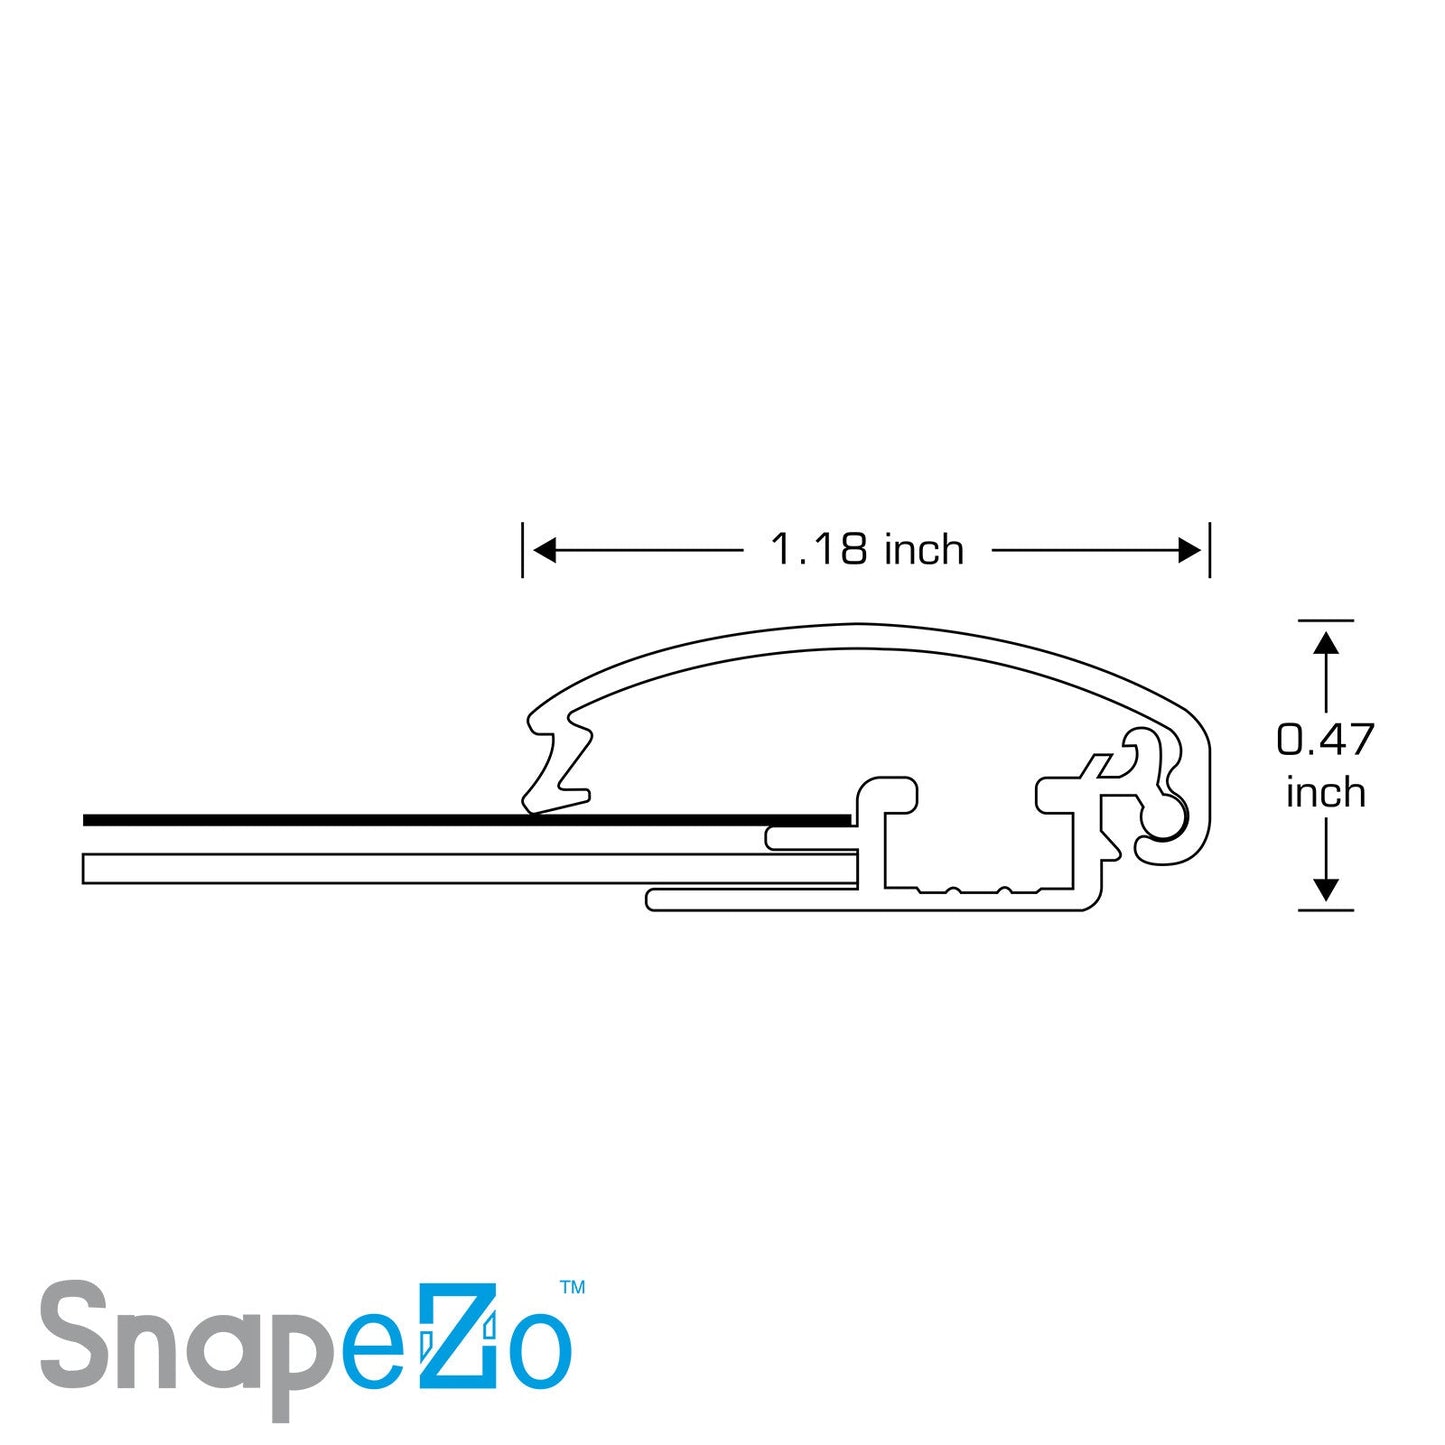 27x40 Yellow SnapeZo® Snap Frame - 1.2" Profile